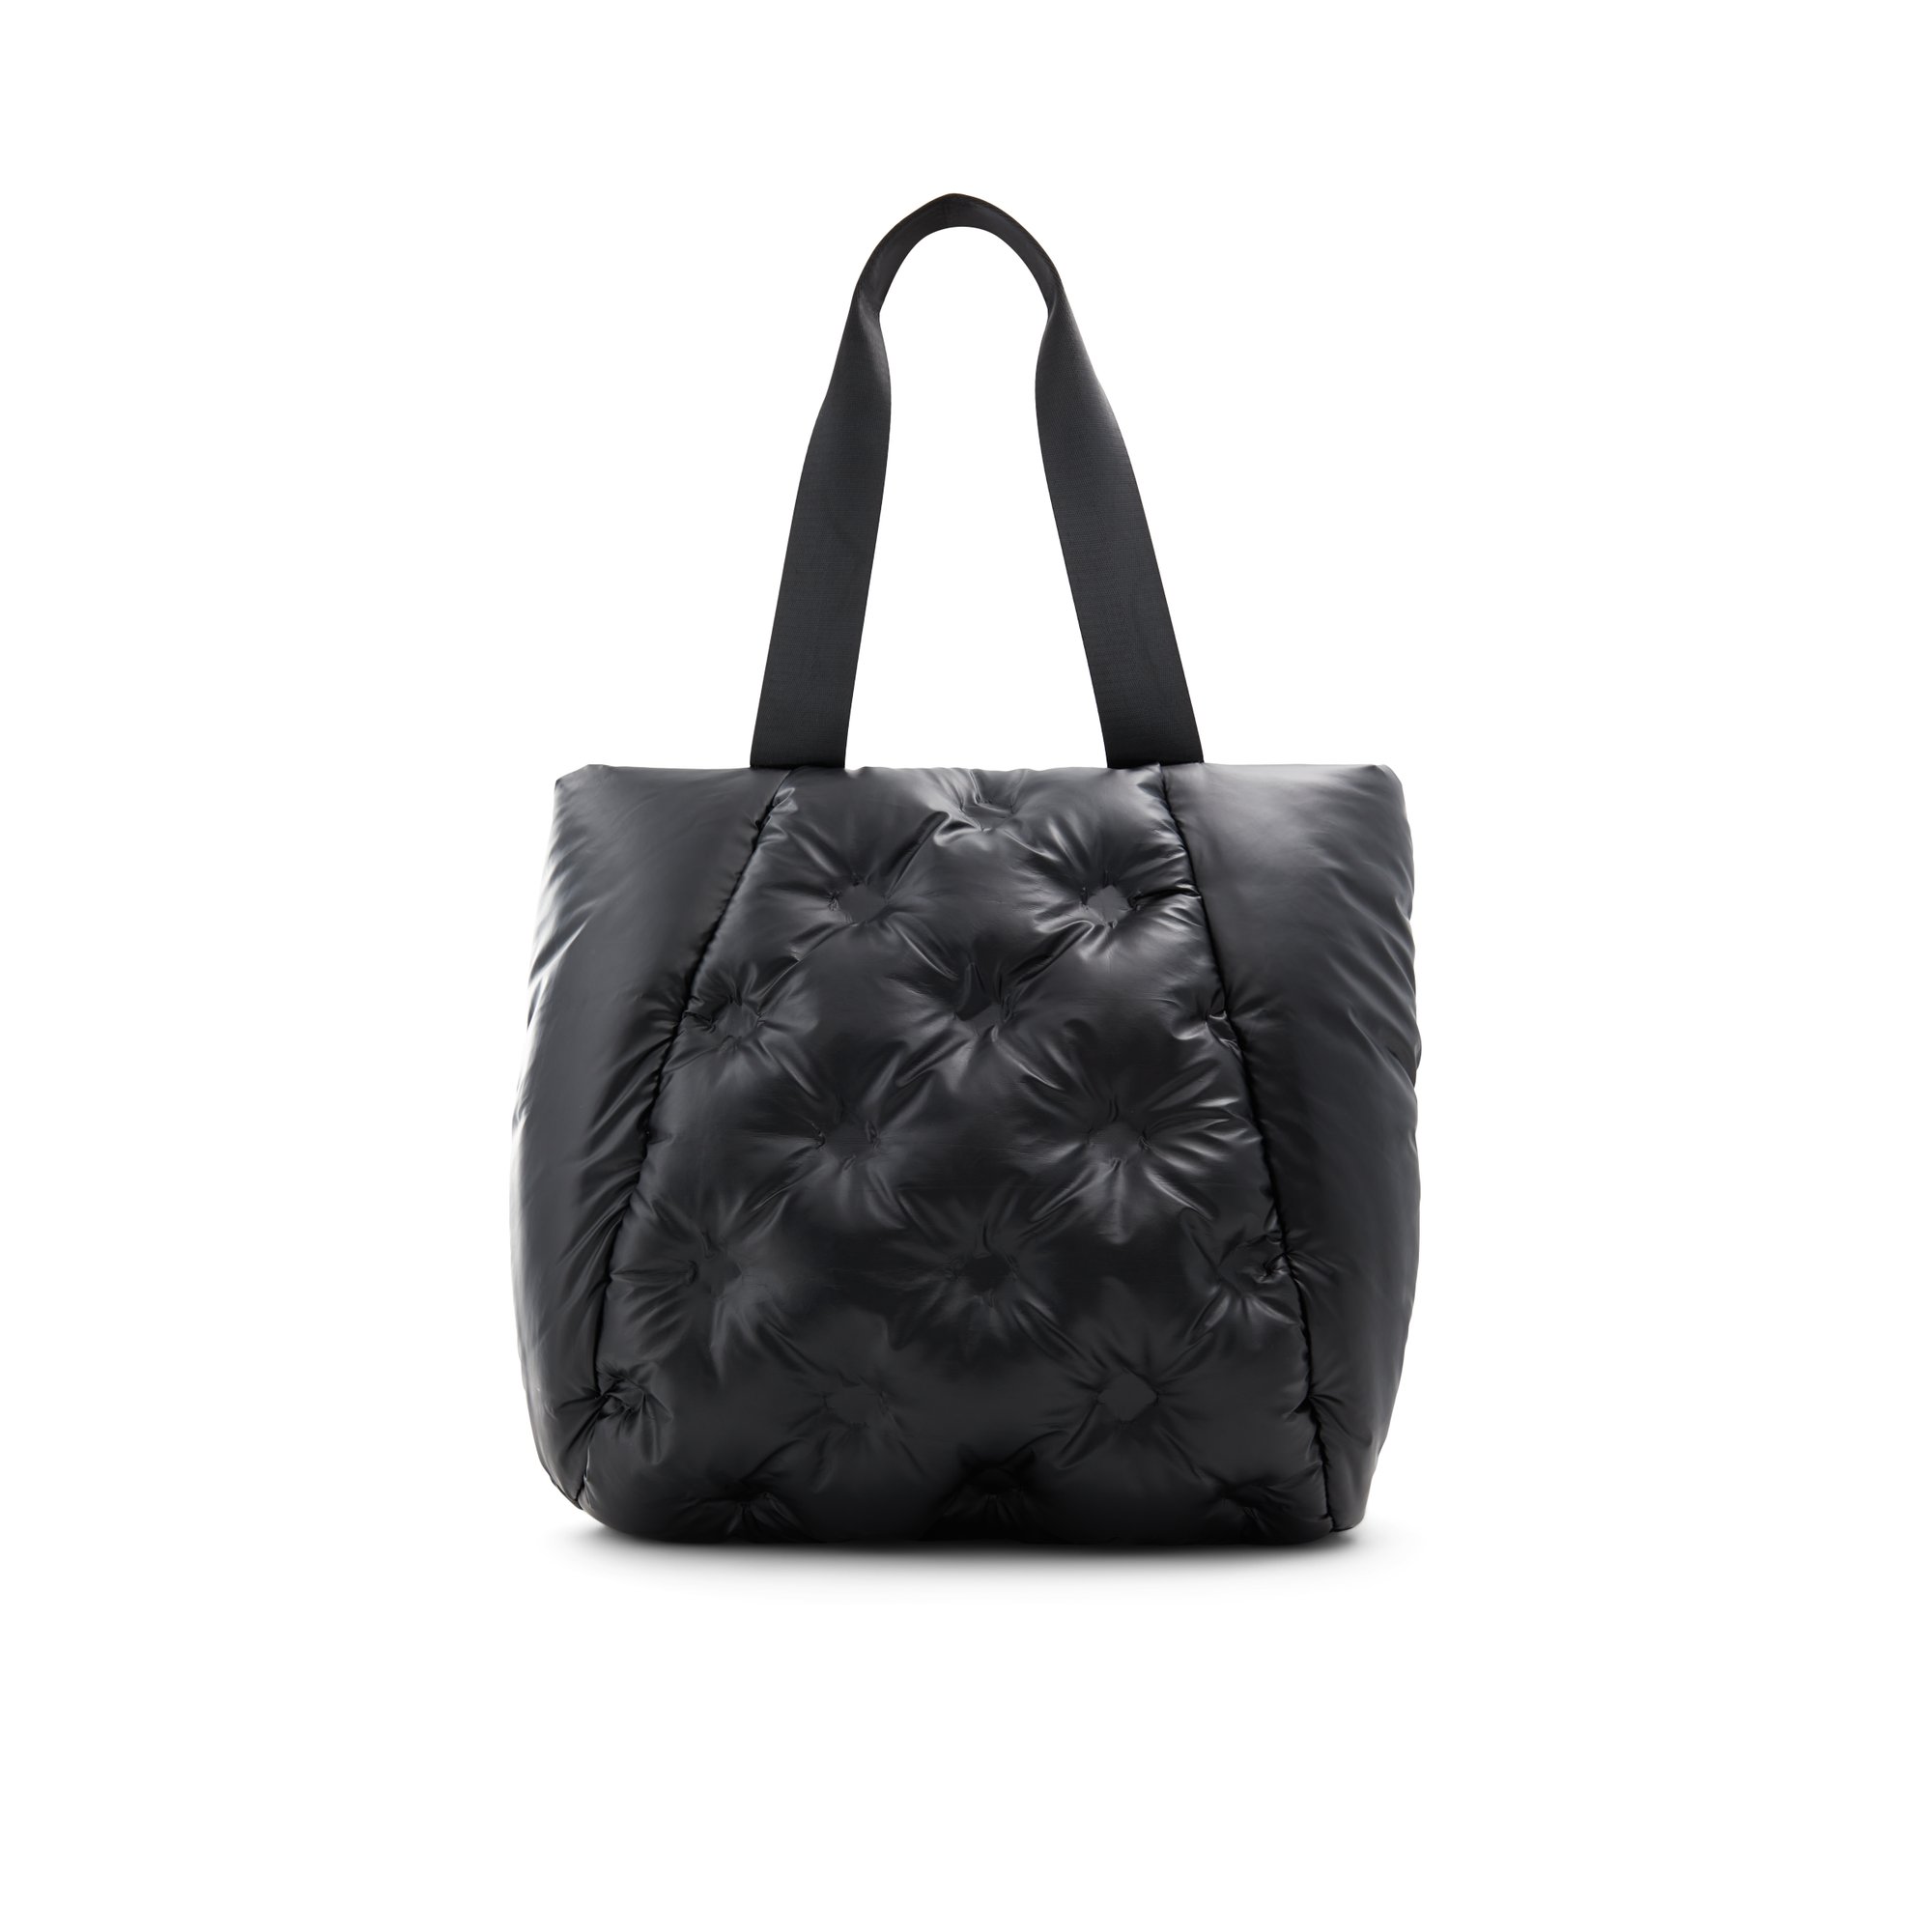 ALDO Puffcarry - Women's Crossbody Handbag - Black